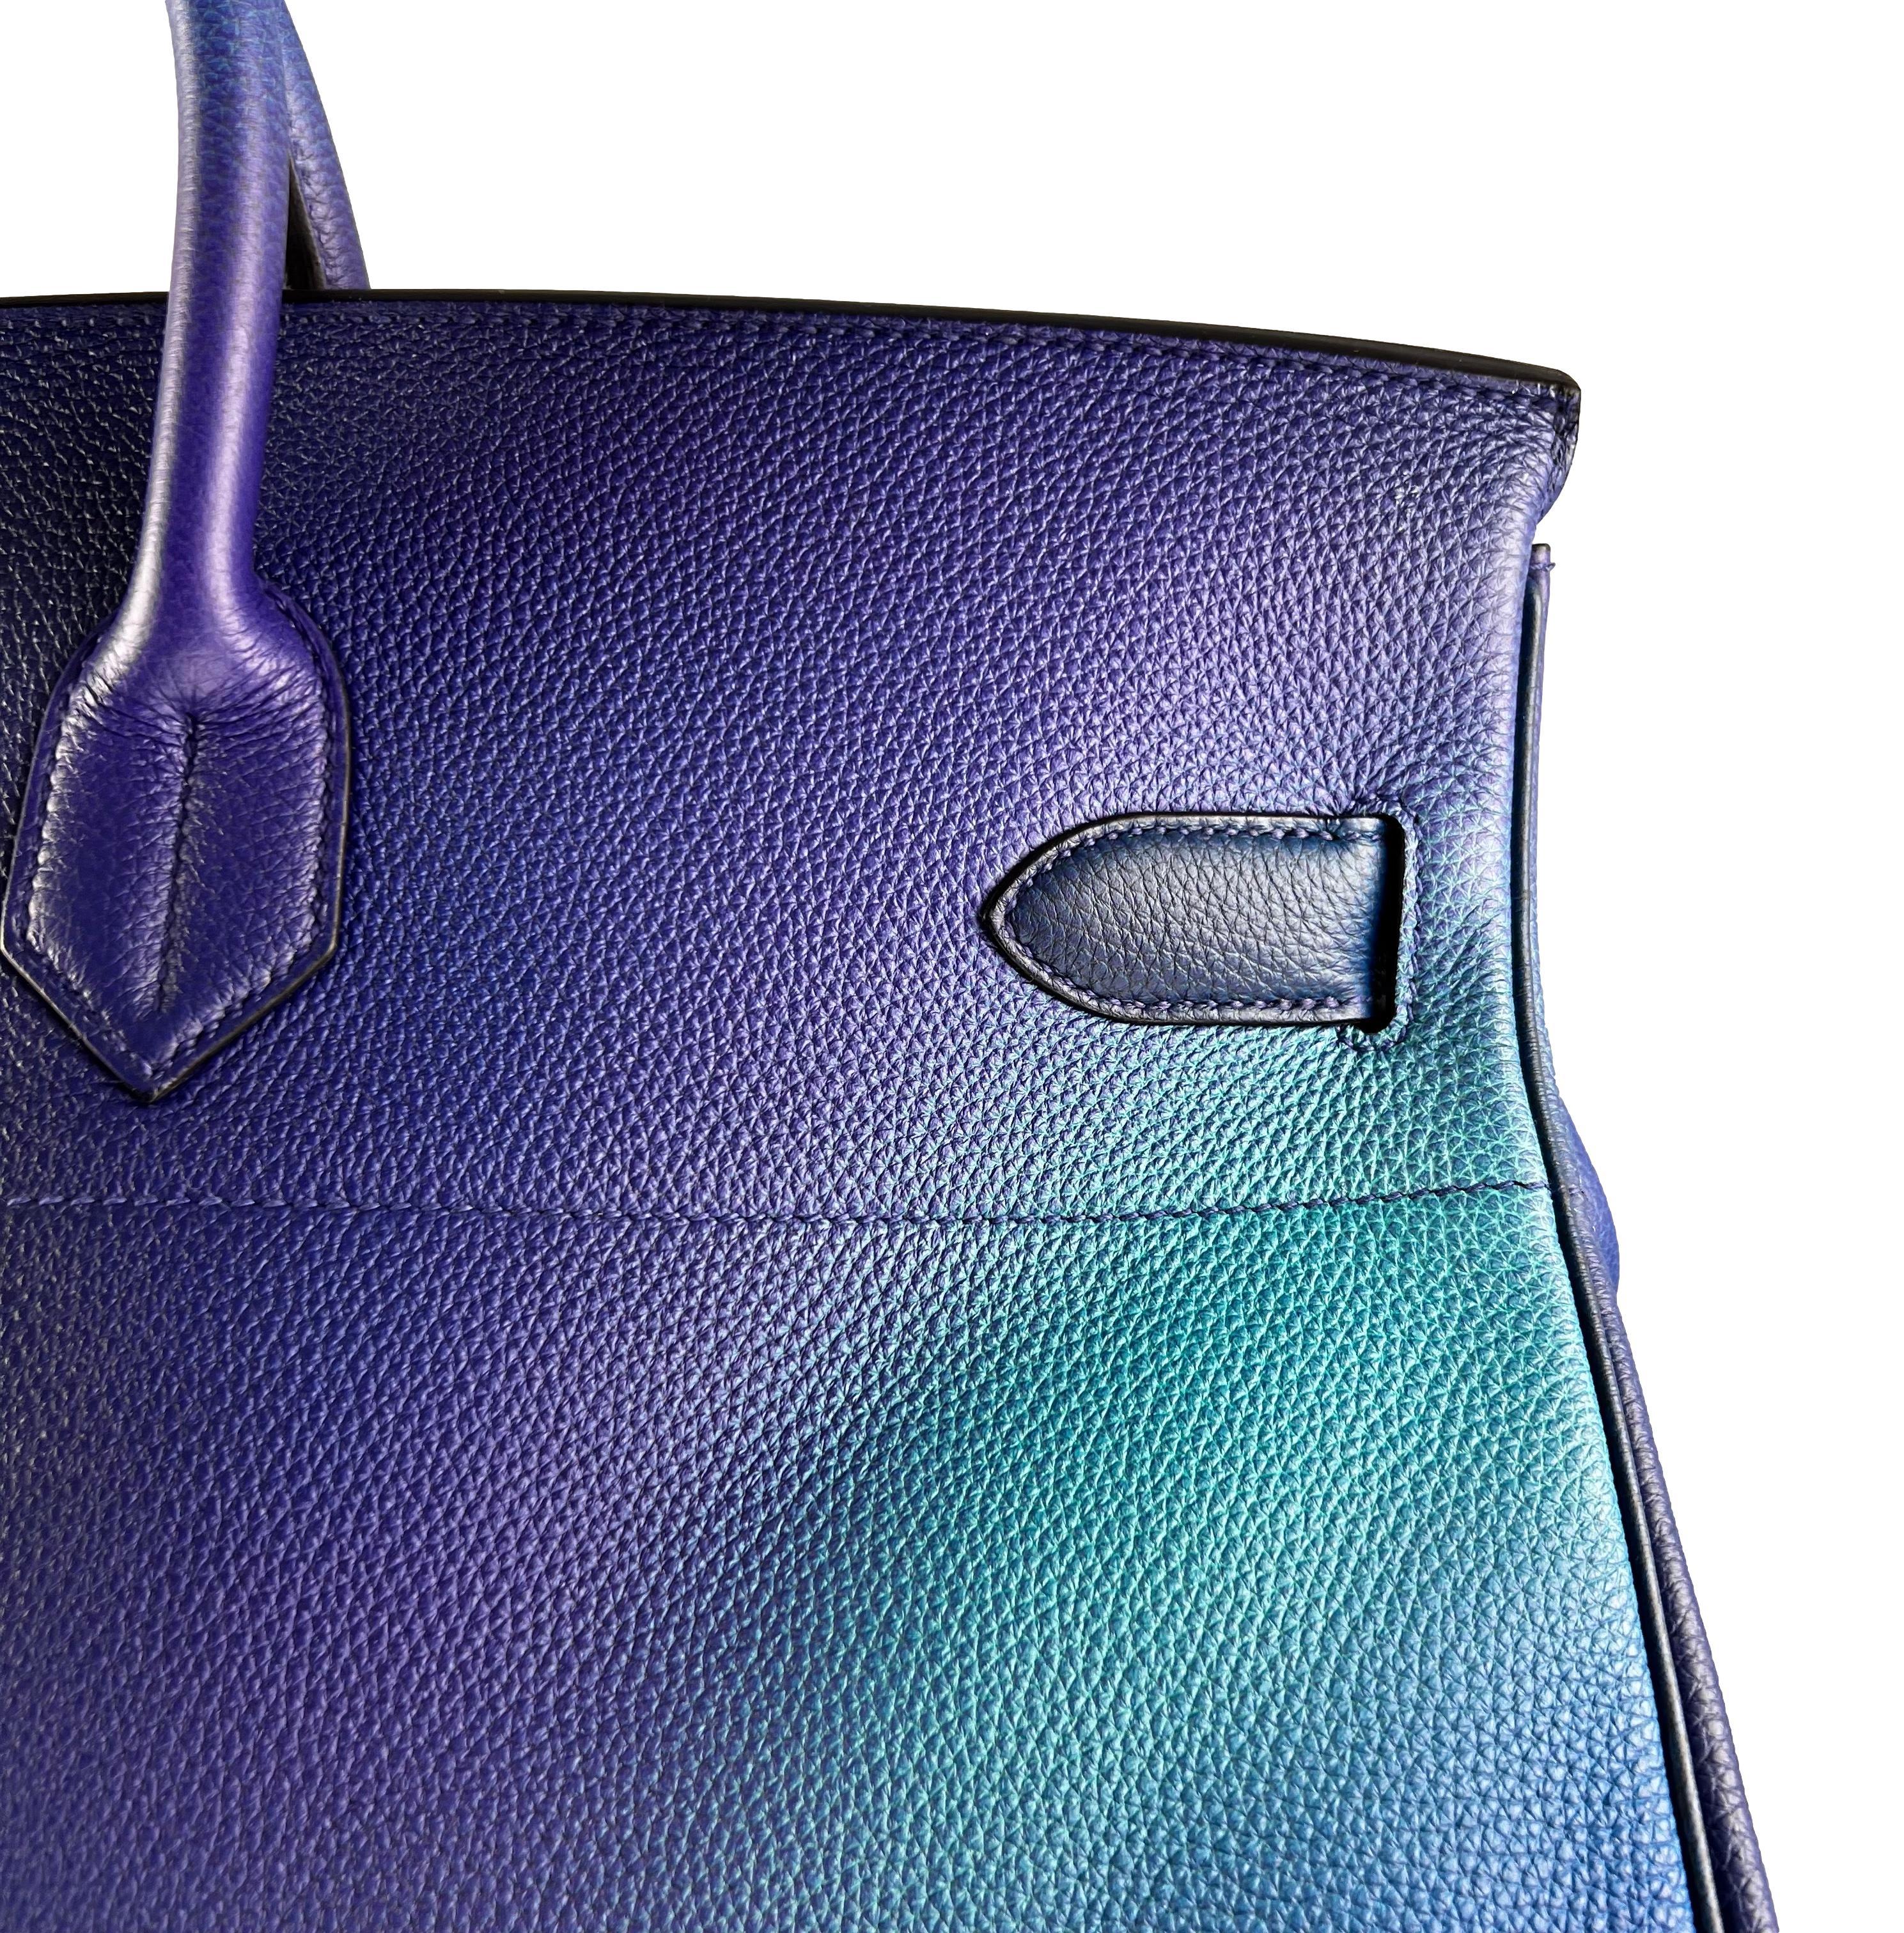 Hermès SS19 Ombré Haut à Courroies Cosmos HAC 50 Nuit Violet Limited Edition Bag 1